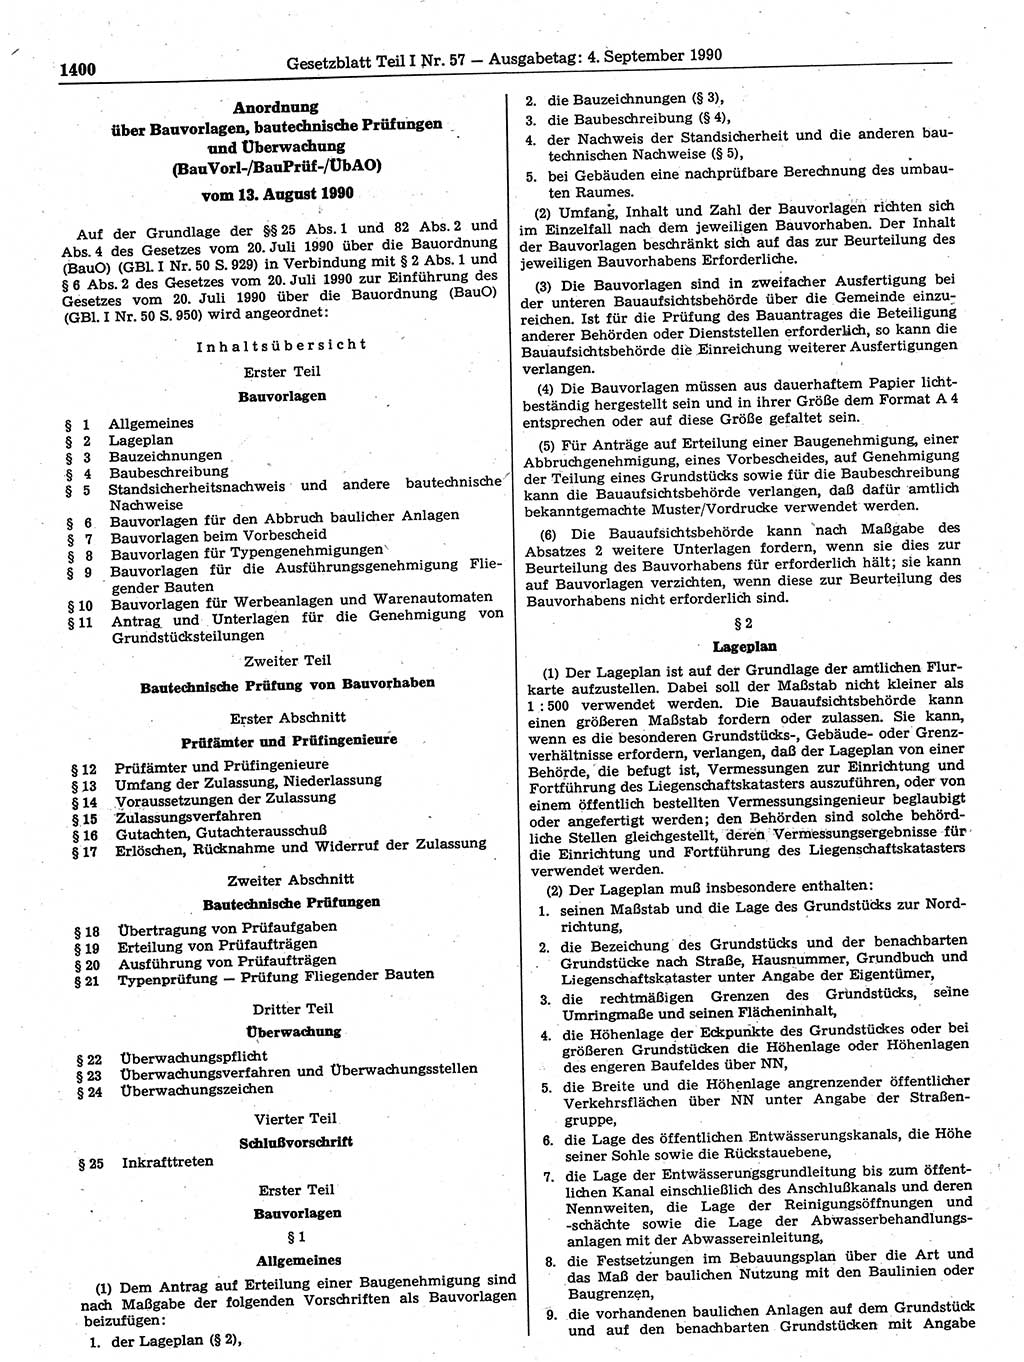 Gesetzblatt (GBl.) der Deutschen Demokratischen Republik (DDR) Teil Ⅰ 1990, Seite 1400 (GBl. DDR Ⅰ 1990, S. 1400)